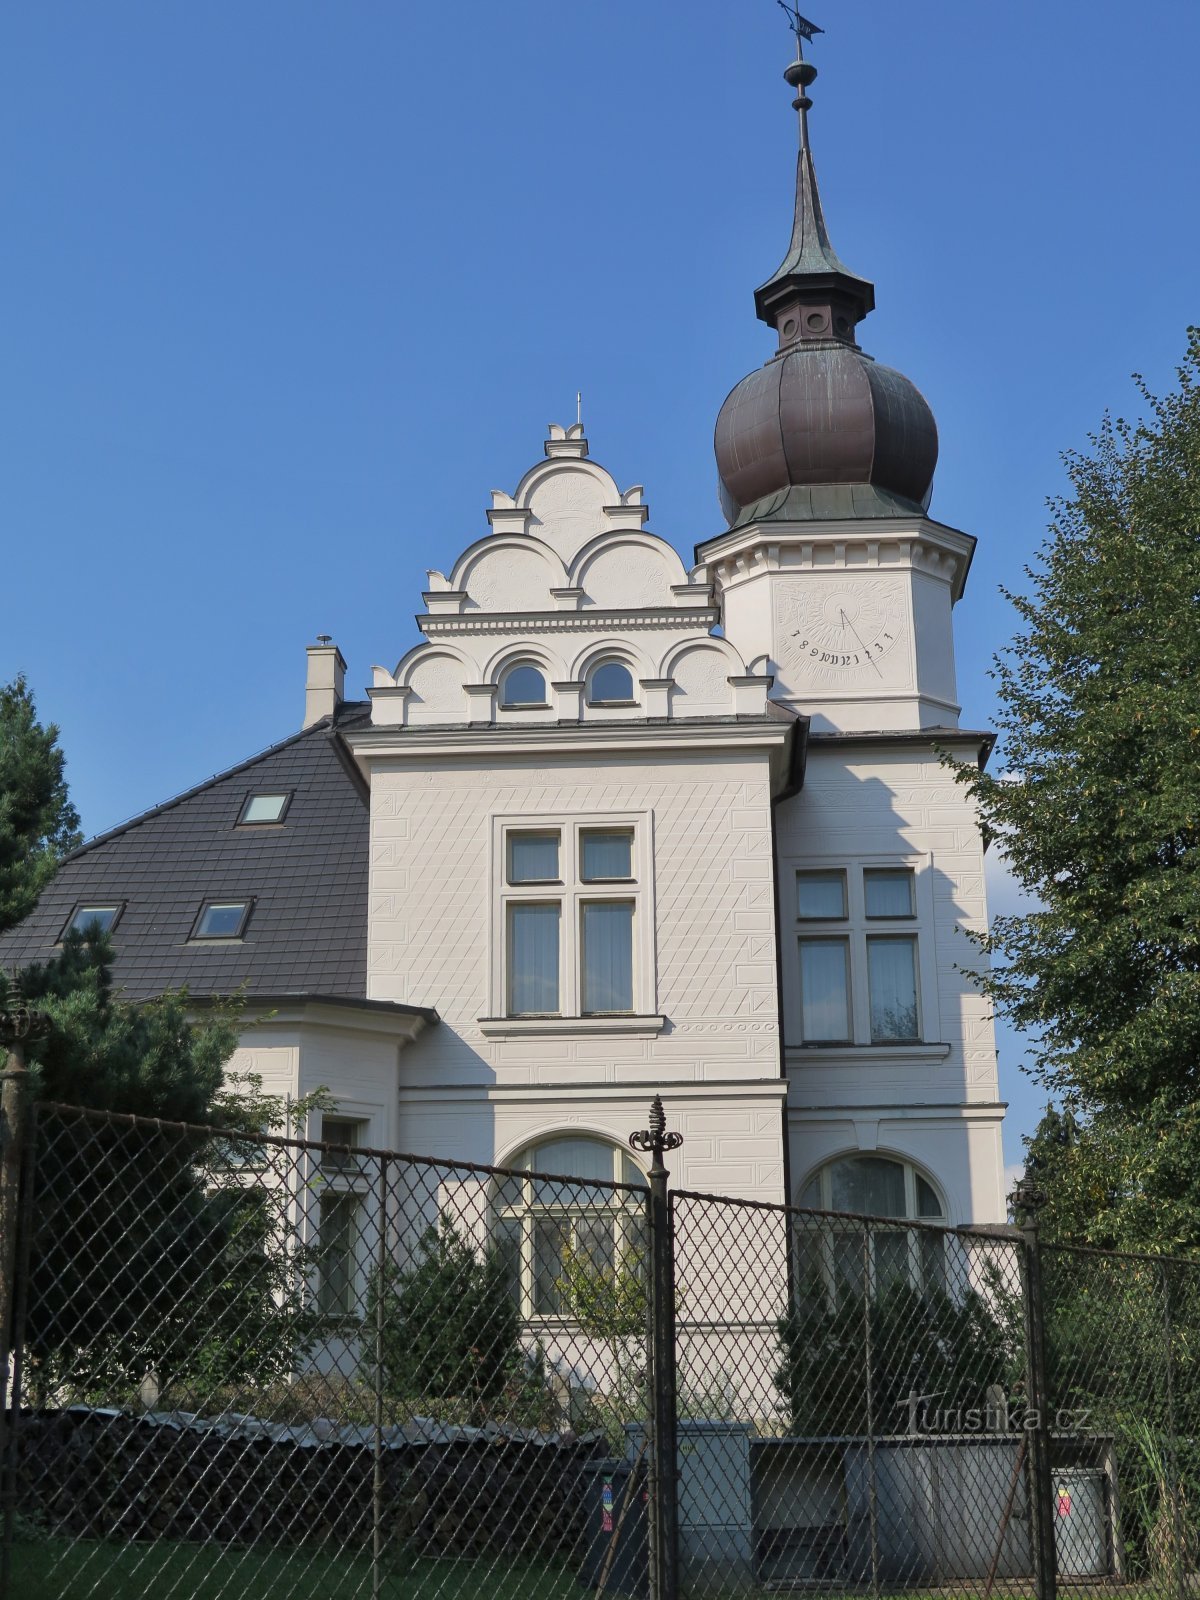 Chrudim – Vodička's villa